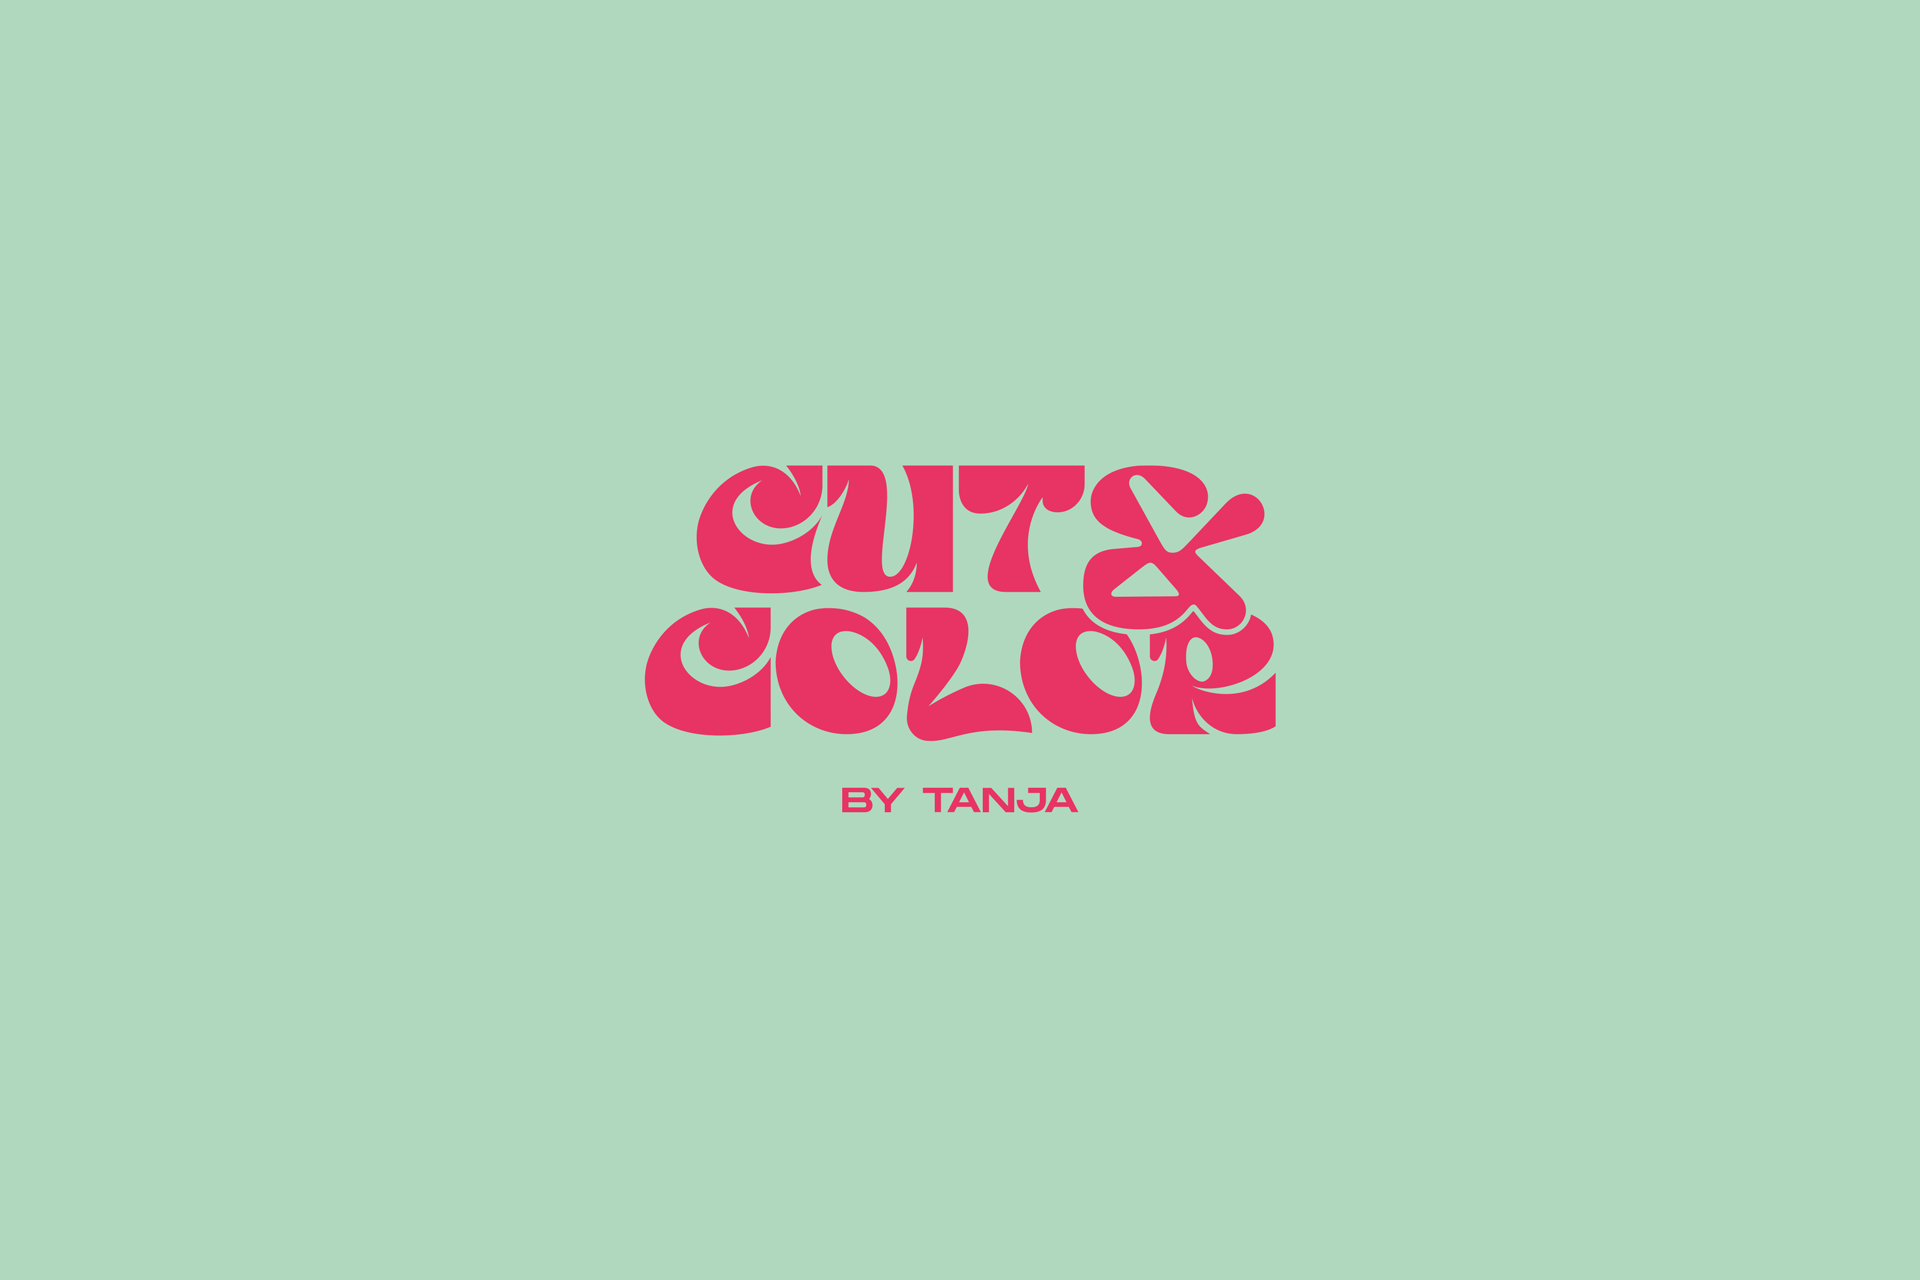 Cut & Color